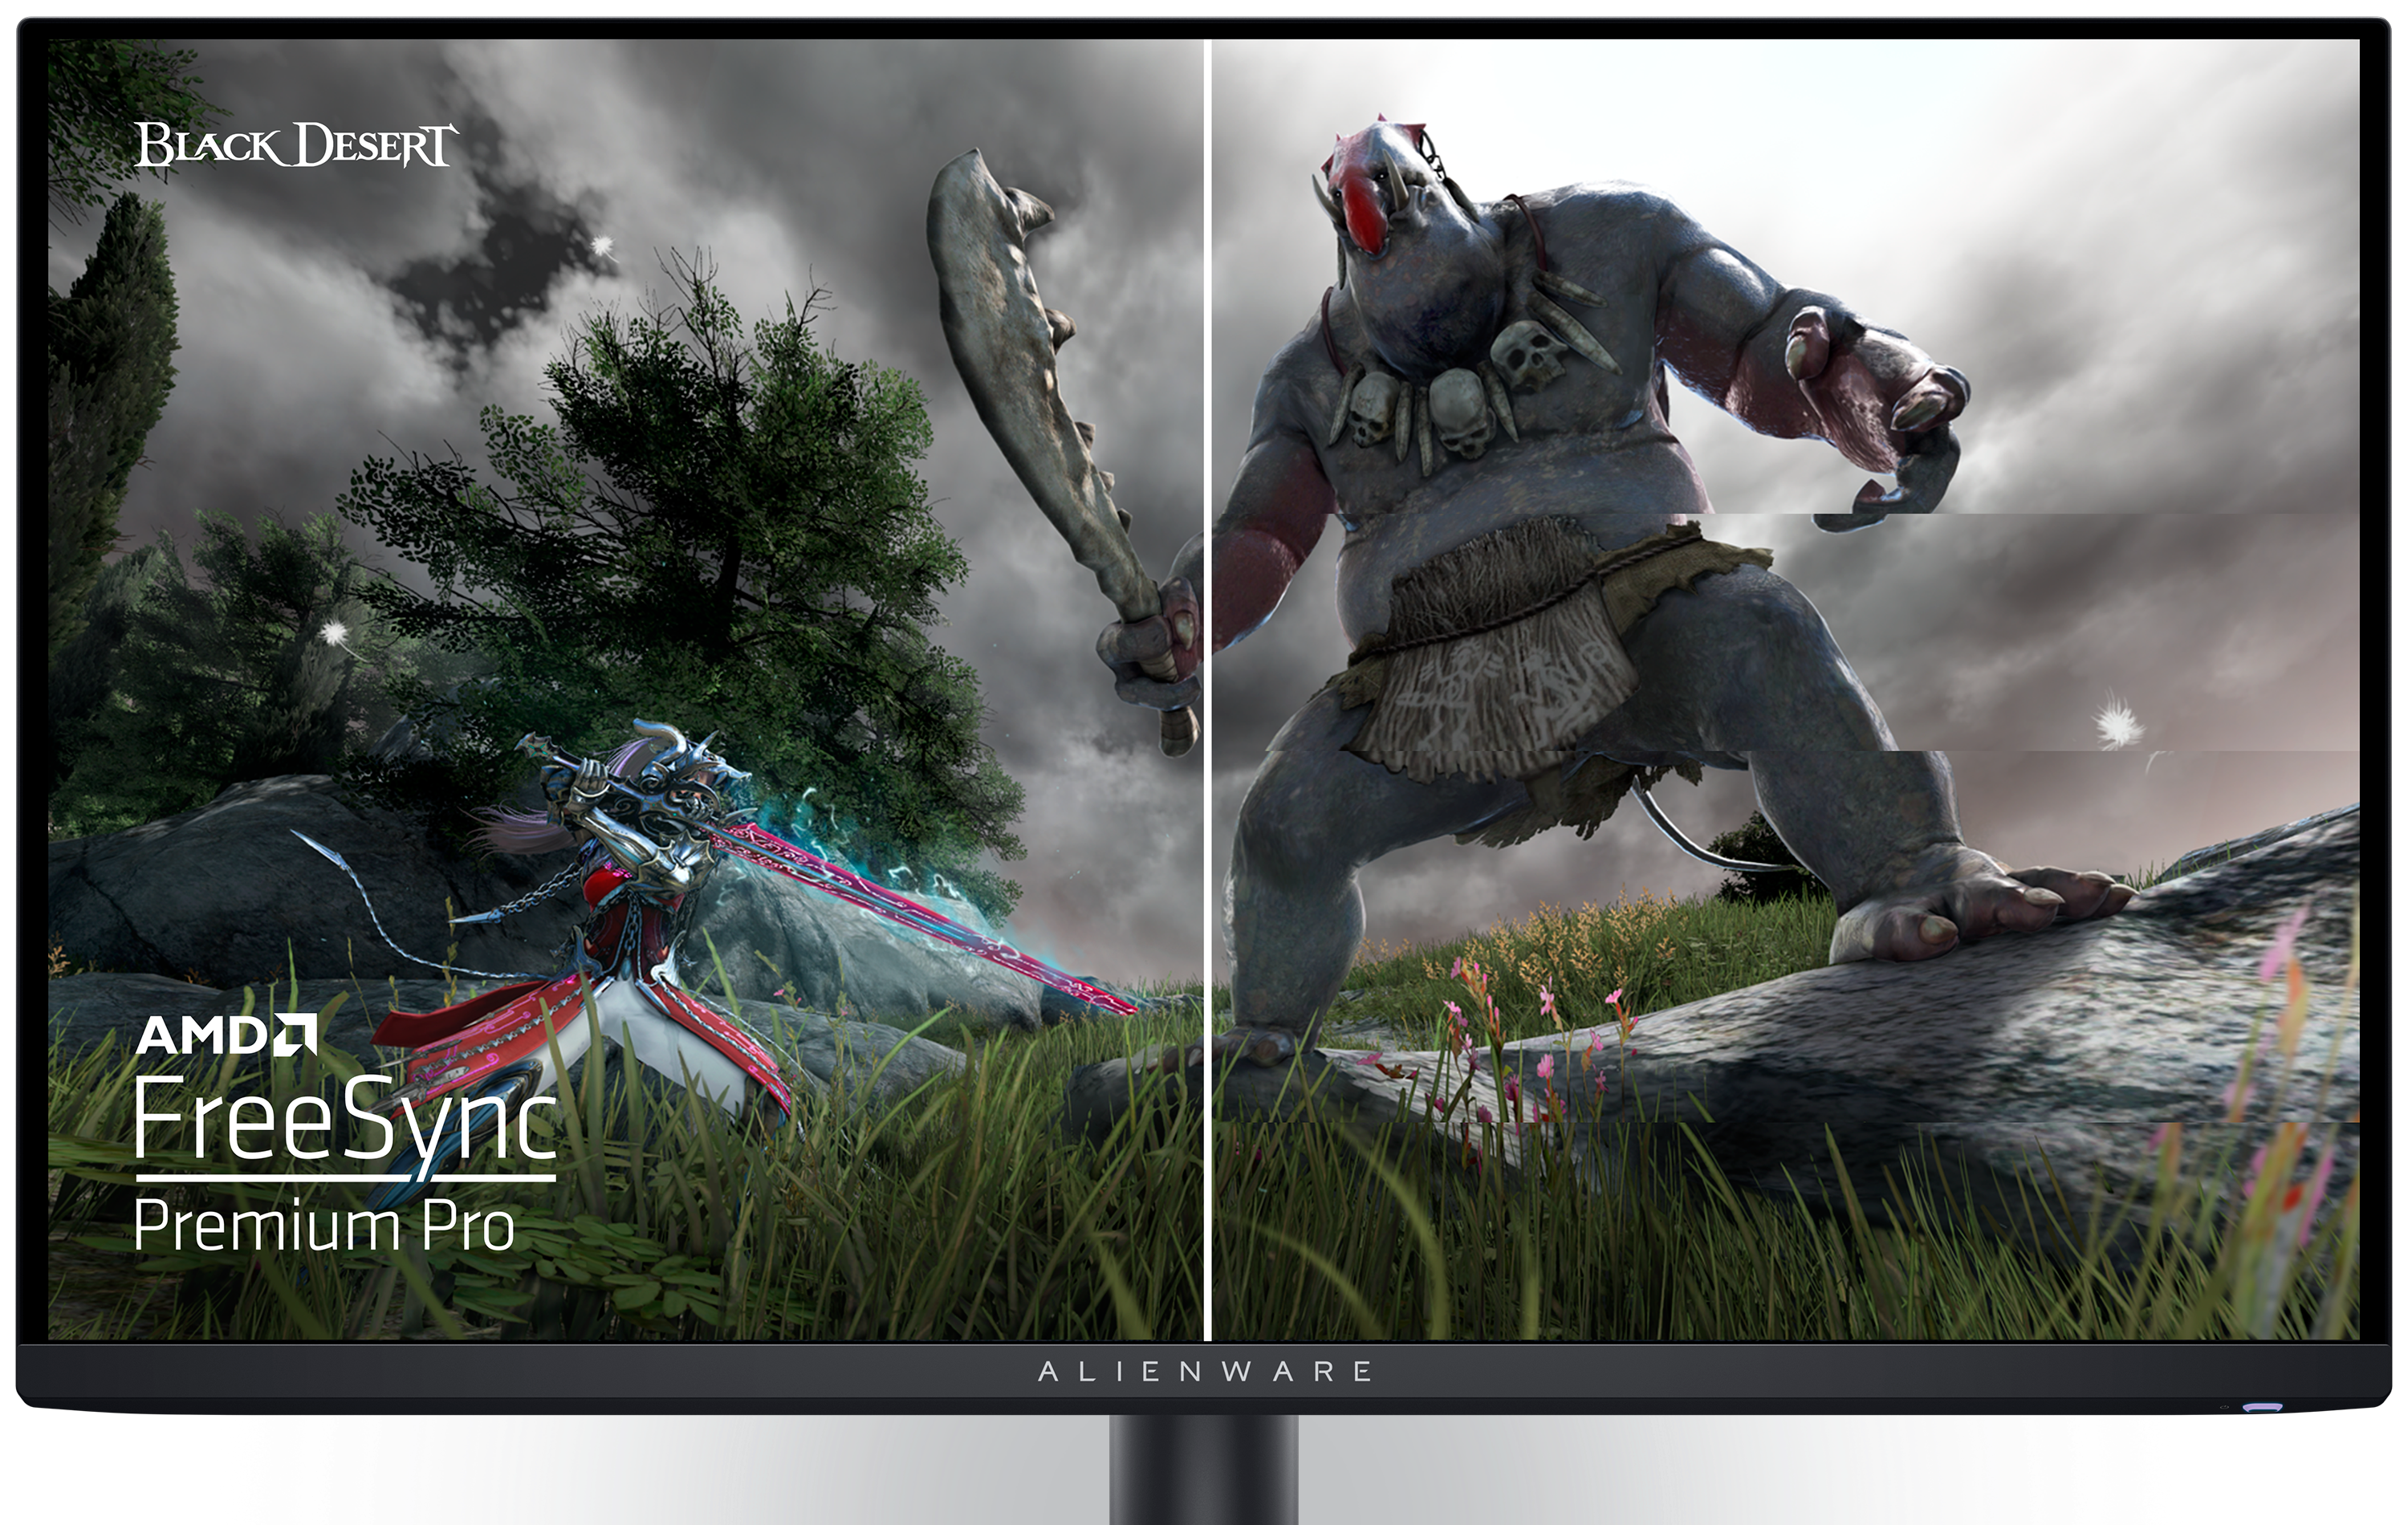 Dell AW2725DFゲーミング モニター。画面に「Black Desert」のゲーム イメージとAMDのロゴが映っています。